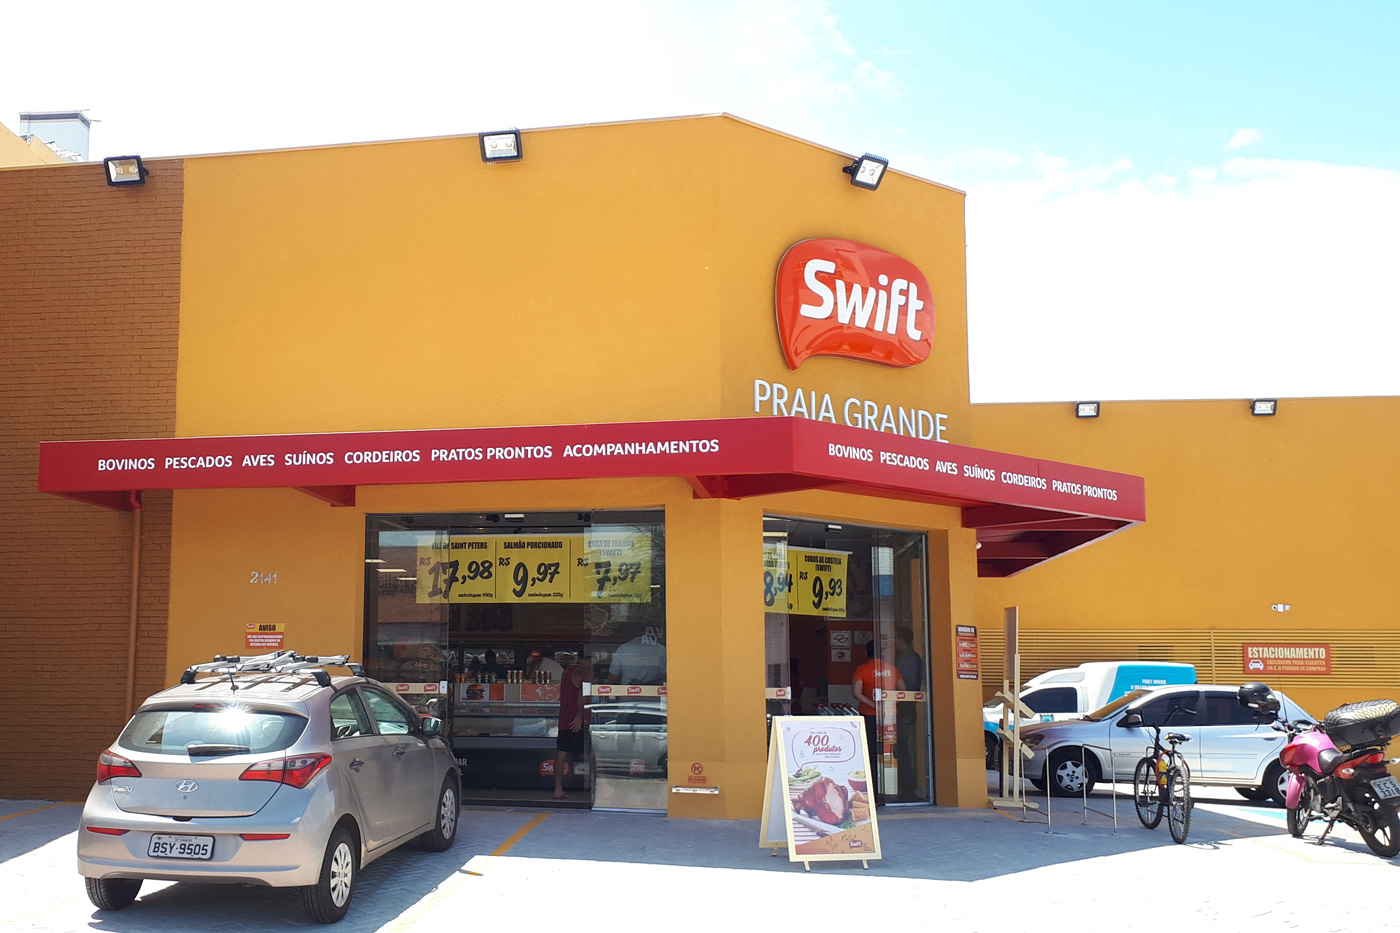 Lojas Swift - Hoje deu praia? Compre on-line ou visite nossas lojas em  Santos, Praia Grande, Guarujá e Riviera. Aproveite! O verão é a estação  perfeita para ter a geladeira cheia de